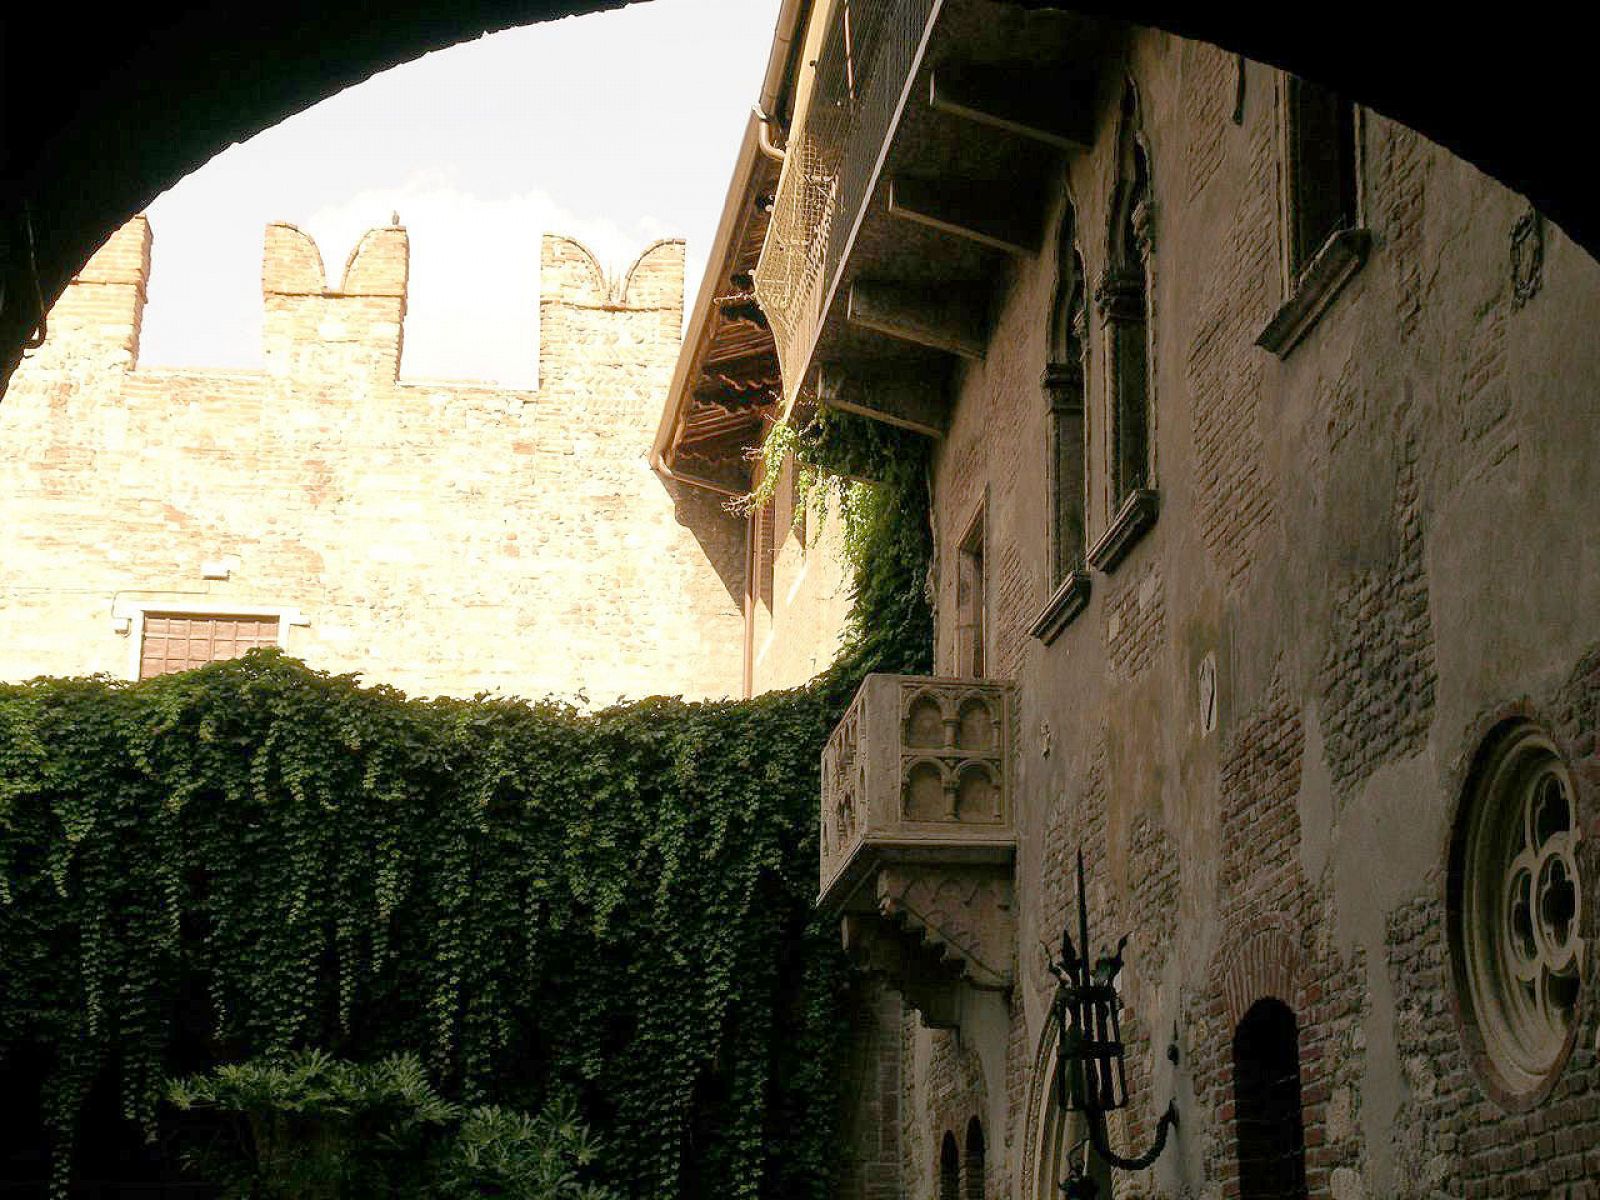 El balcón de Julieta es uno de los destinos turísticos más populares de Verona.